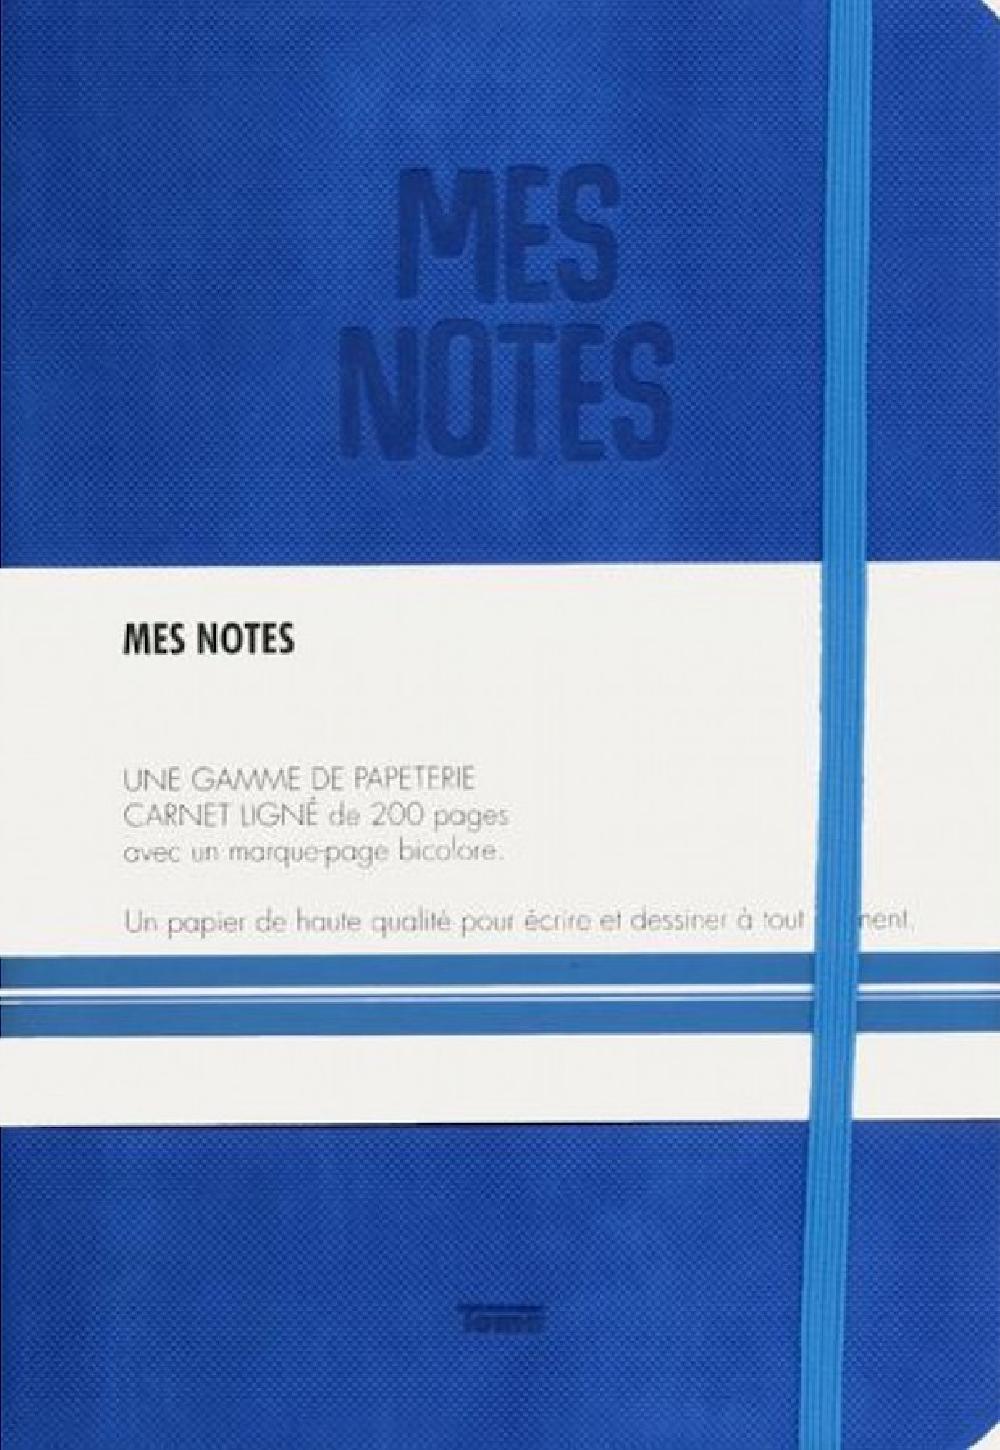 Notes cuir bleu electrique - Mes notes